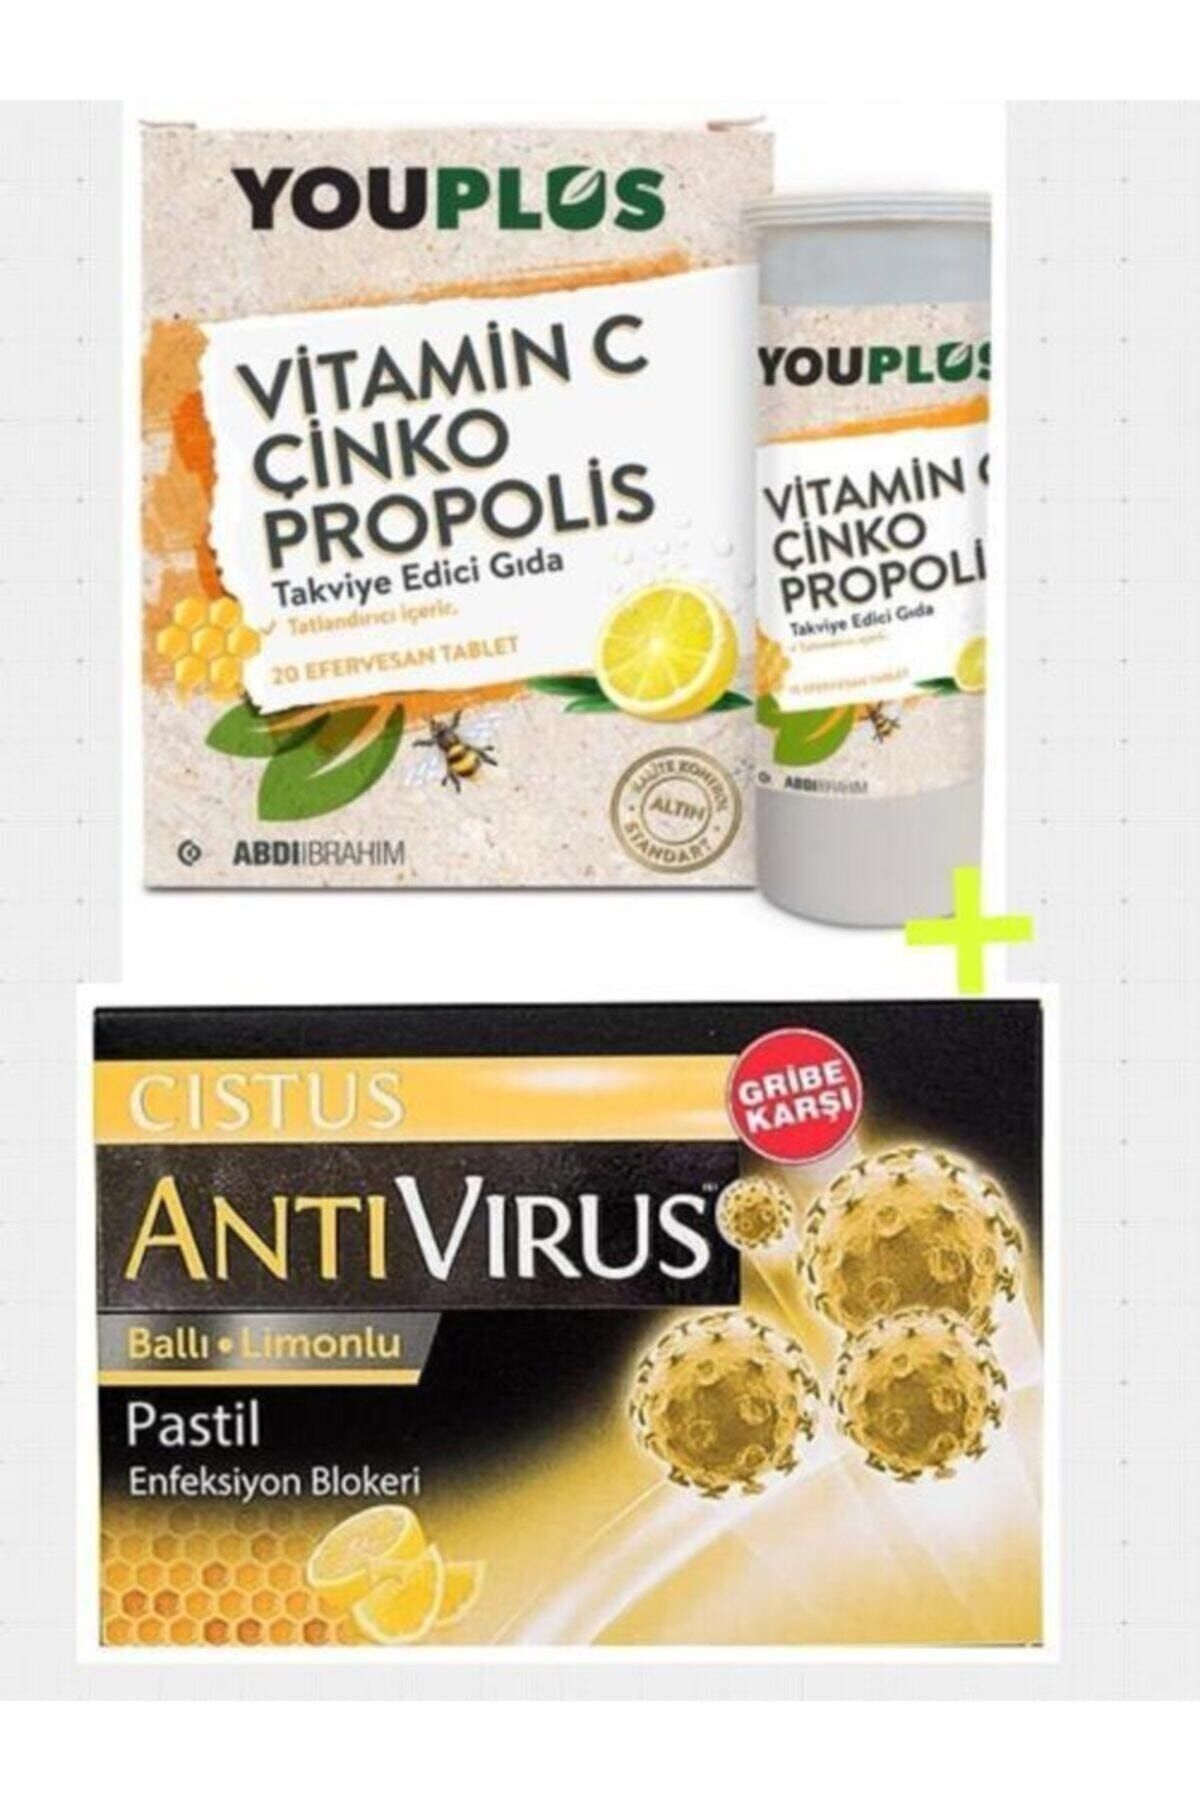 Youplus Vitamin C Çinko Propolis 20 Efervesan Ve Antivirüs Pastil Cistus Ballı Limonlu